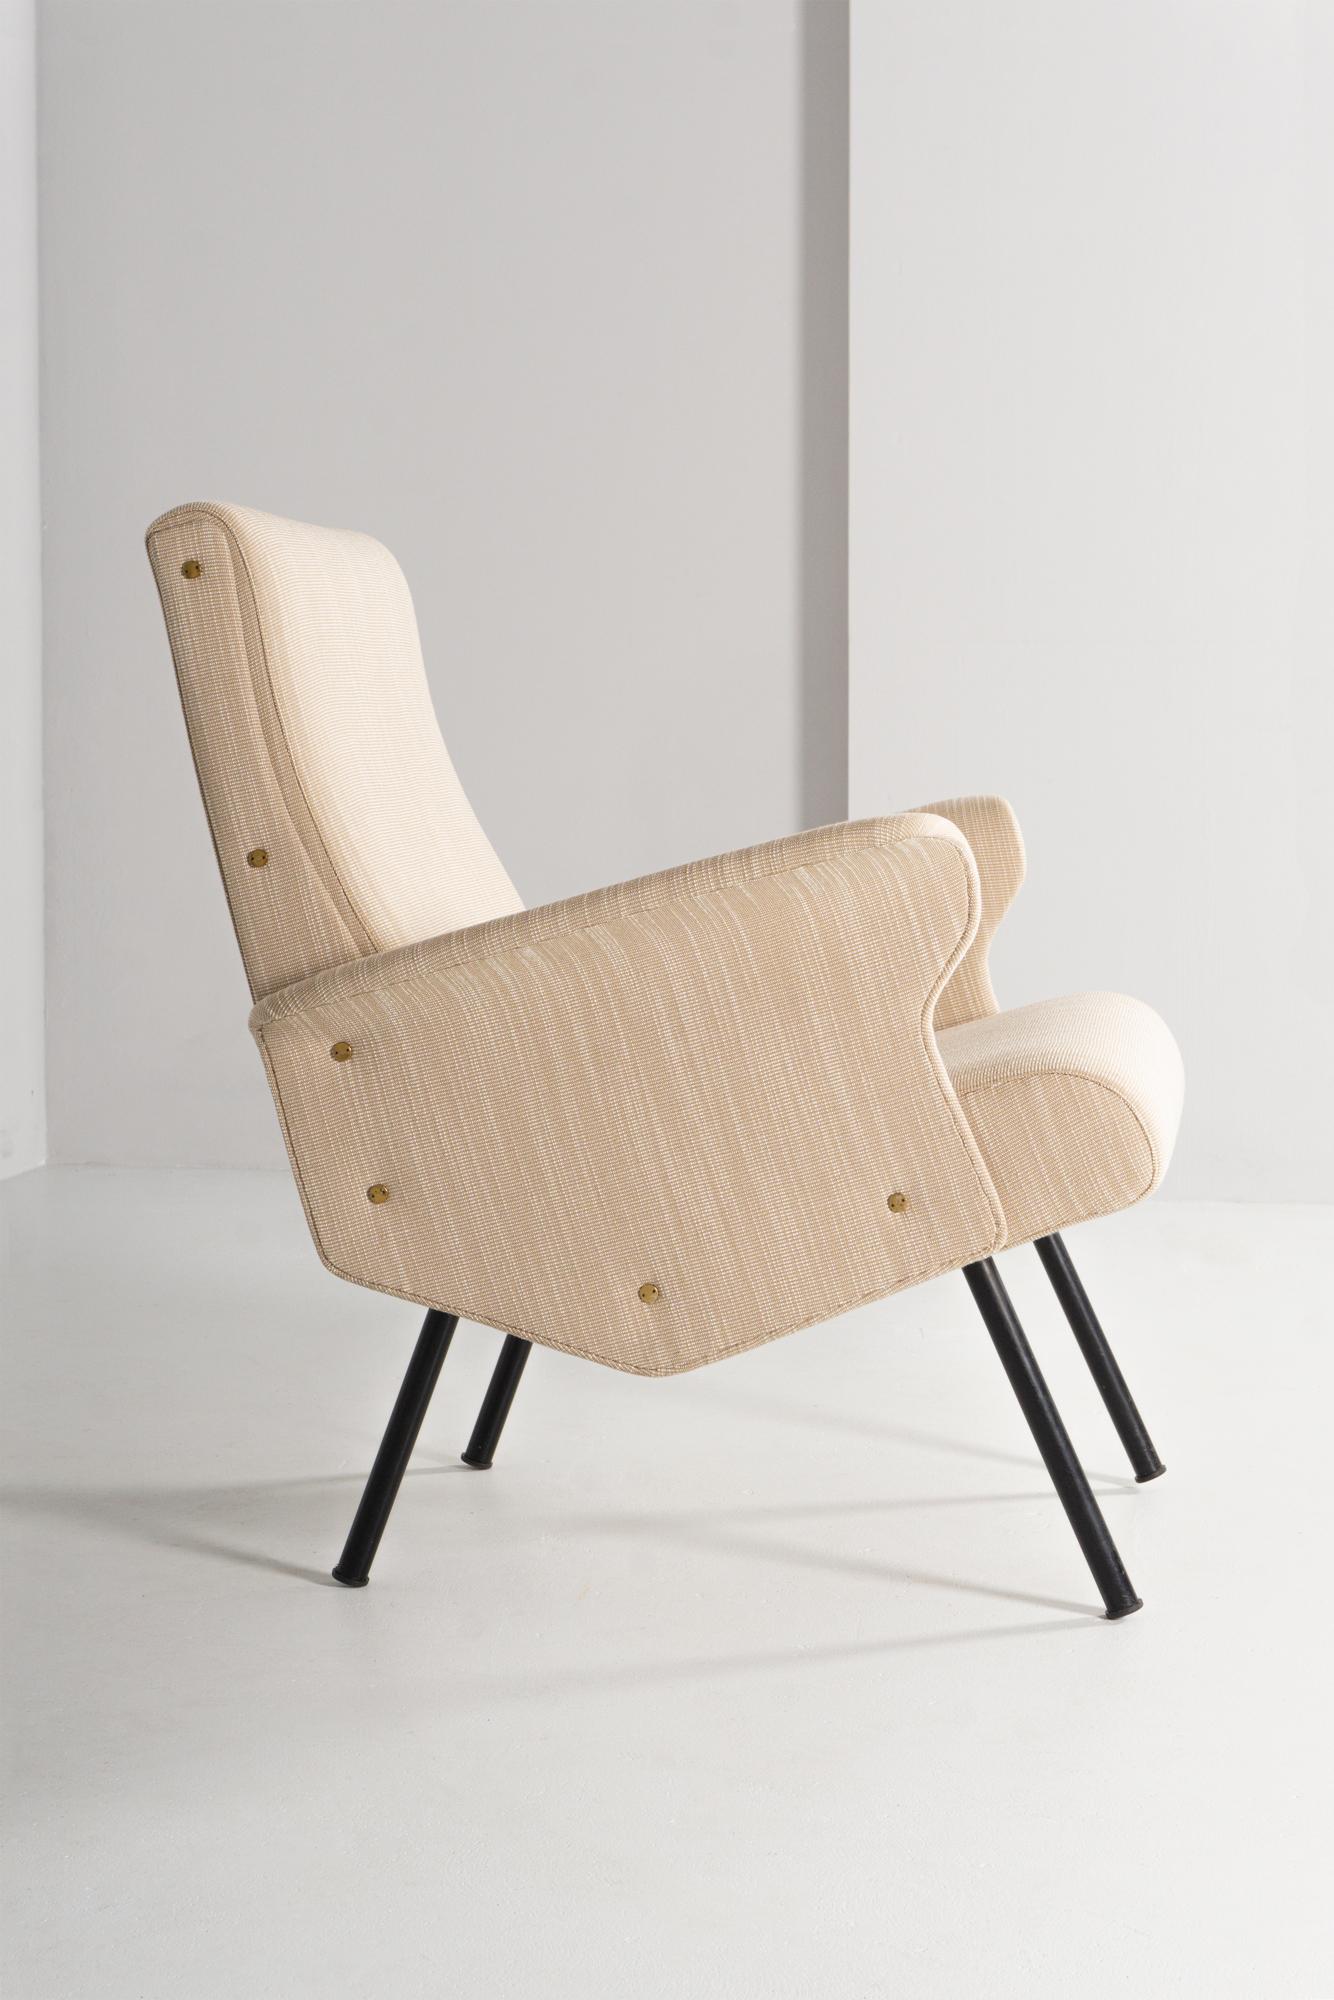 Dieses raffinierte Möbelstück, das 1960 von Gianfranco Frattini für Cassina entworfen wurde, zeichnet sich durch seine kulturelle und futuristische Linie aus. Der Bezug, der ebenso wie der Schaumstoff erneuert wird, ist aus bestem Leder